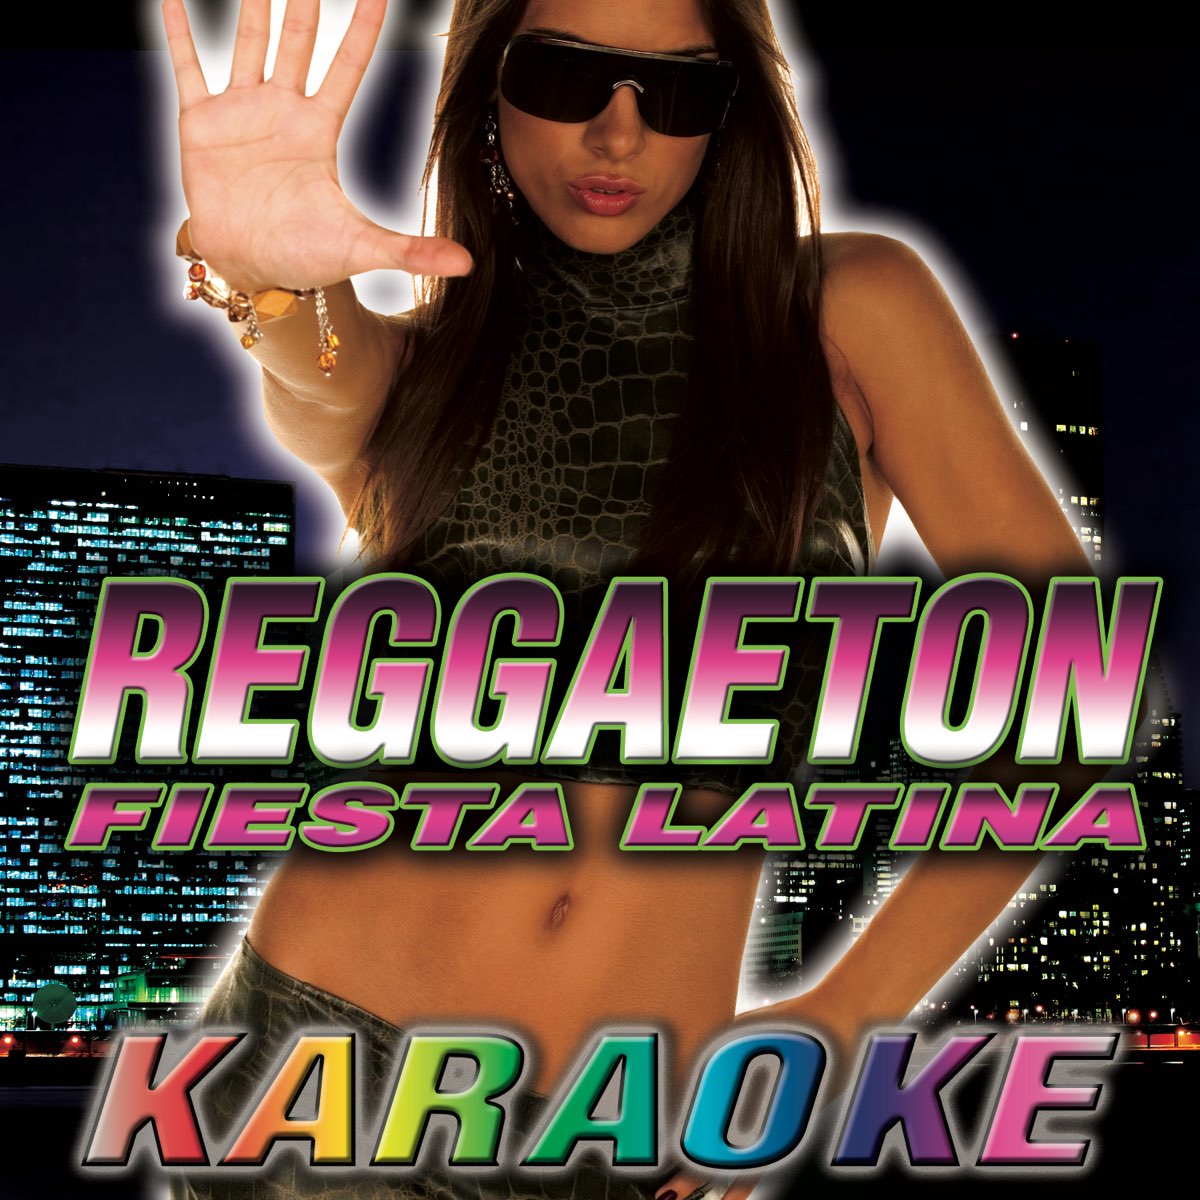 Reggaeton. Reggaeton обложка альбома. Reggaeton girl обложка альбома.